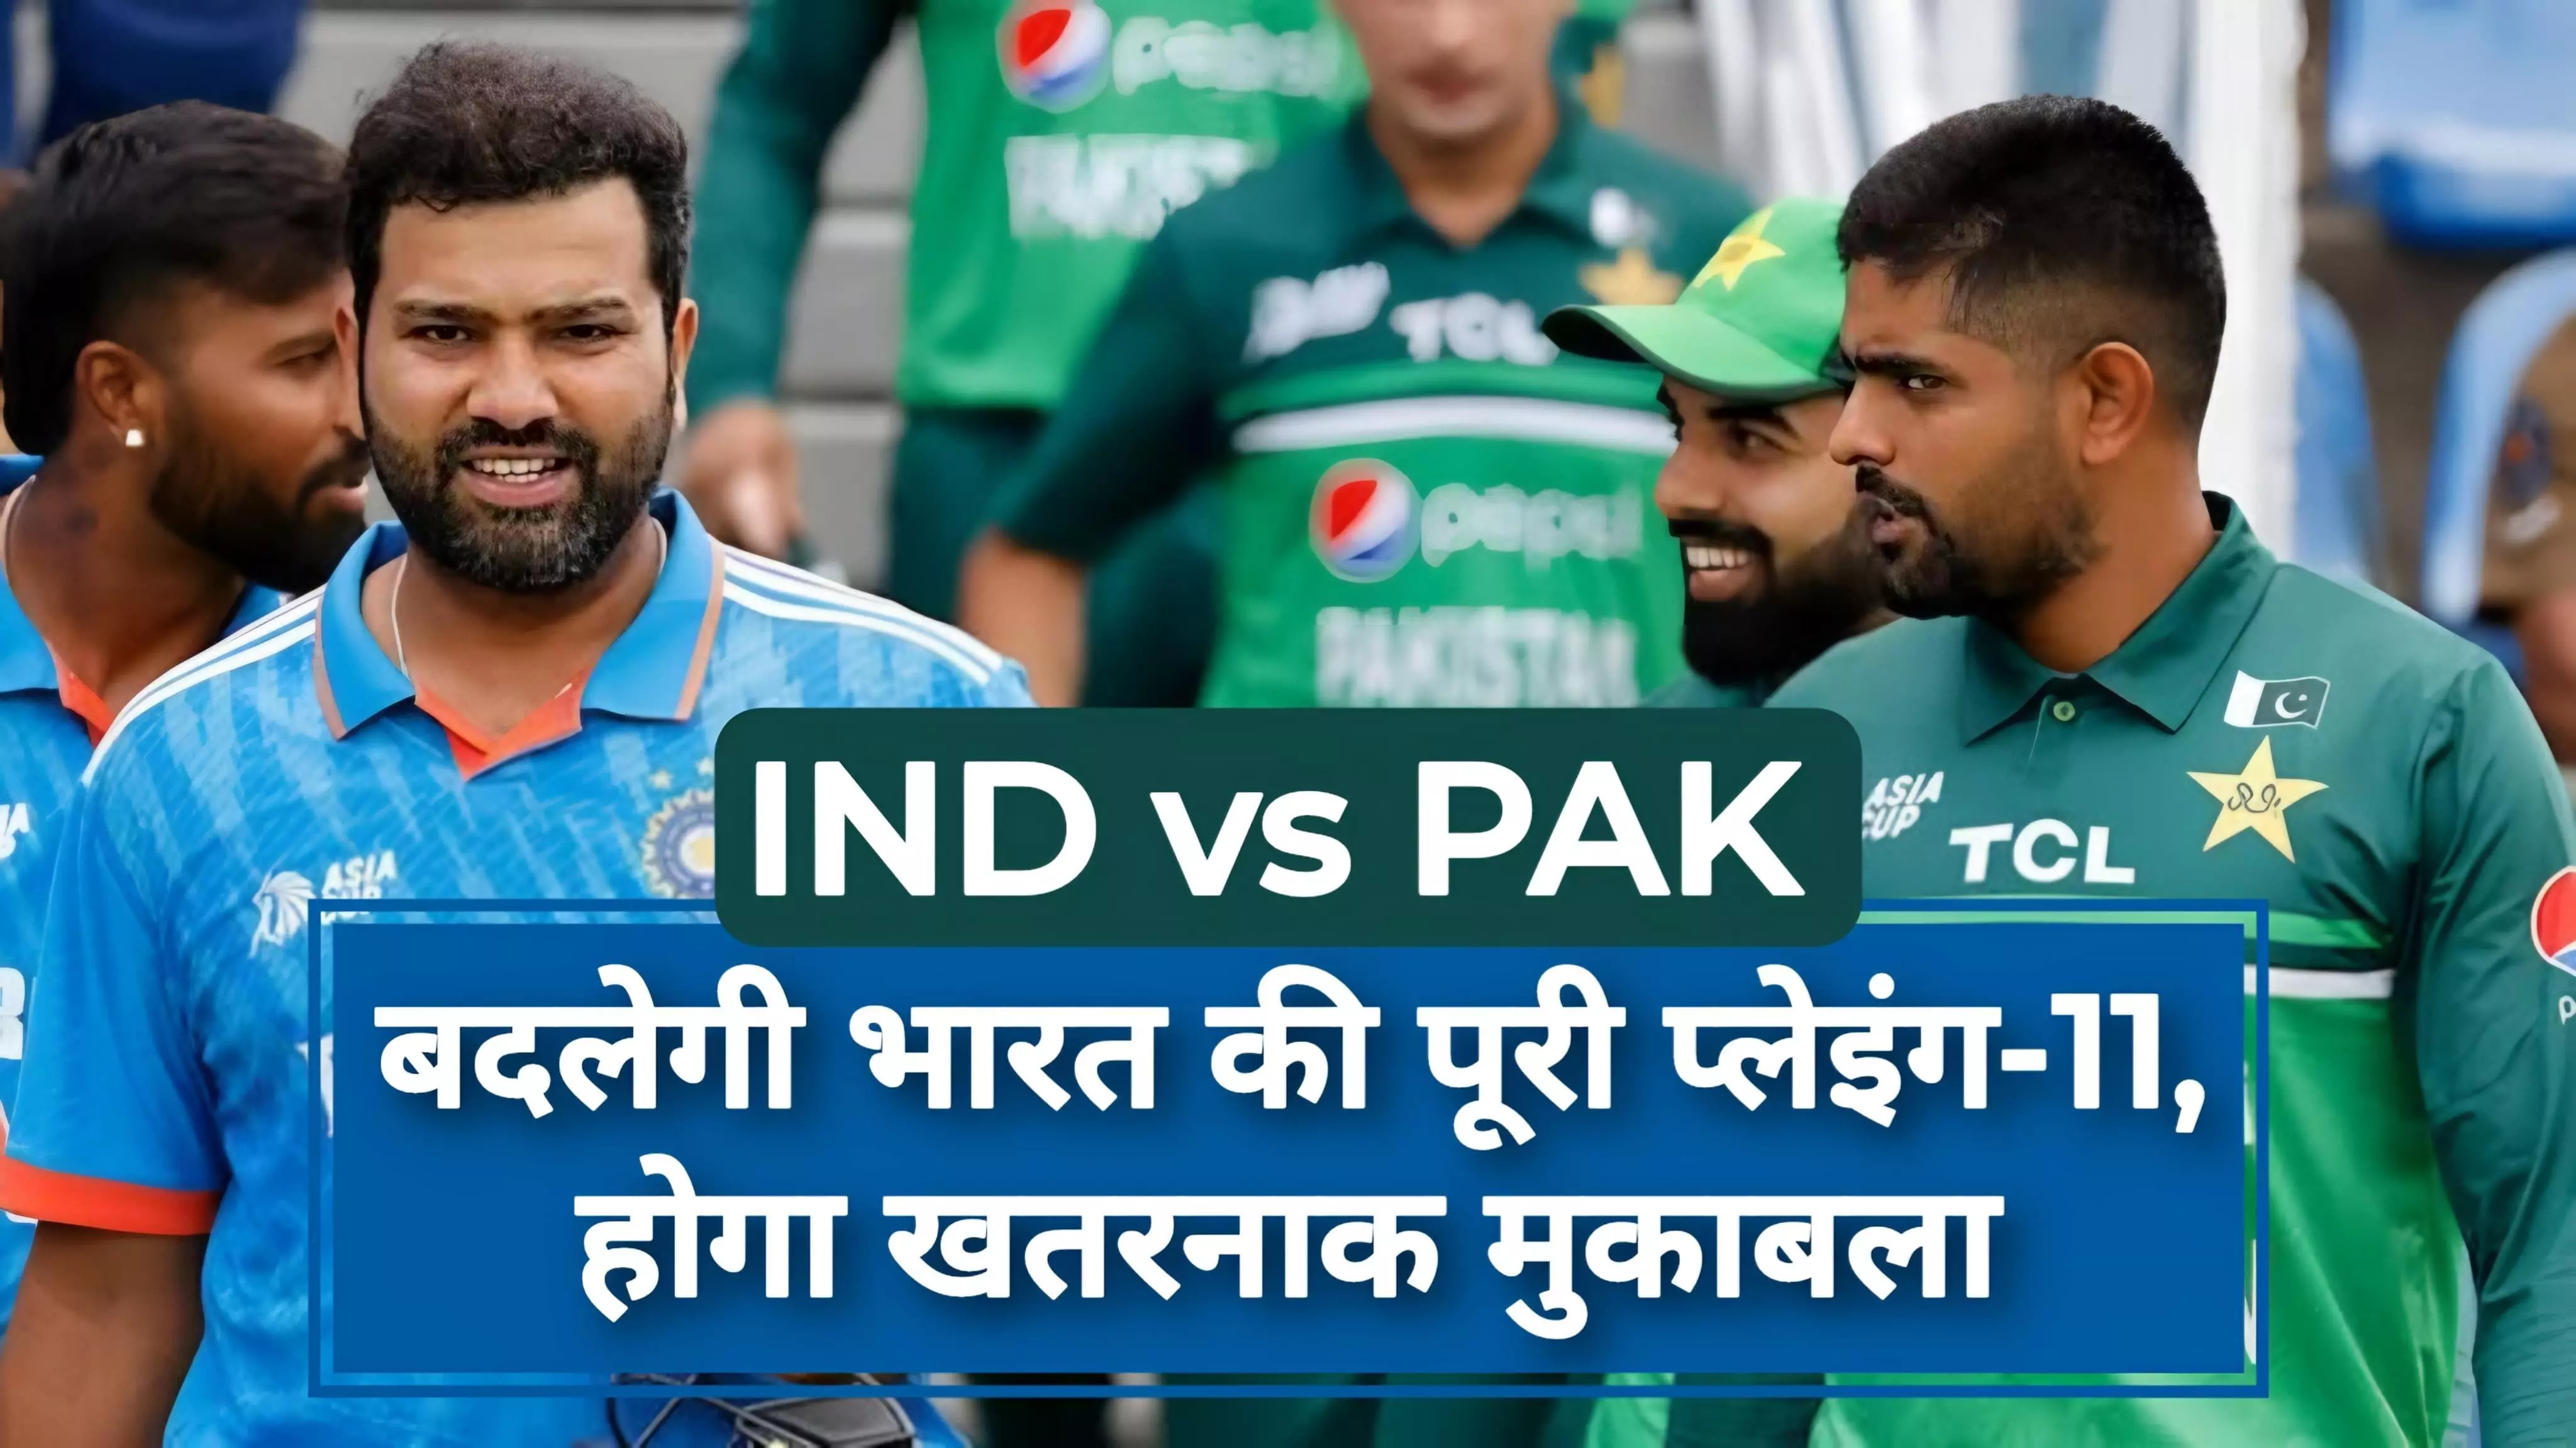 एशिया कप 2023: IND vs PAK मैच में बदलेगी भारत की पूरी प्लेइंग-11, होगा खतरनाक मुकाबला!